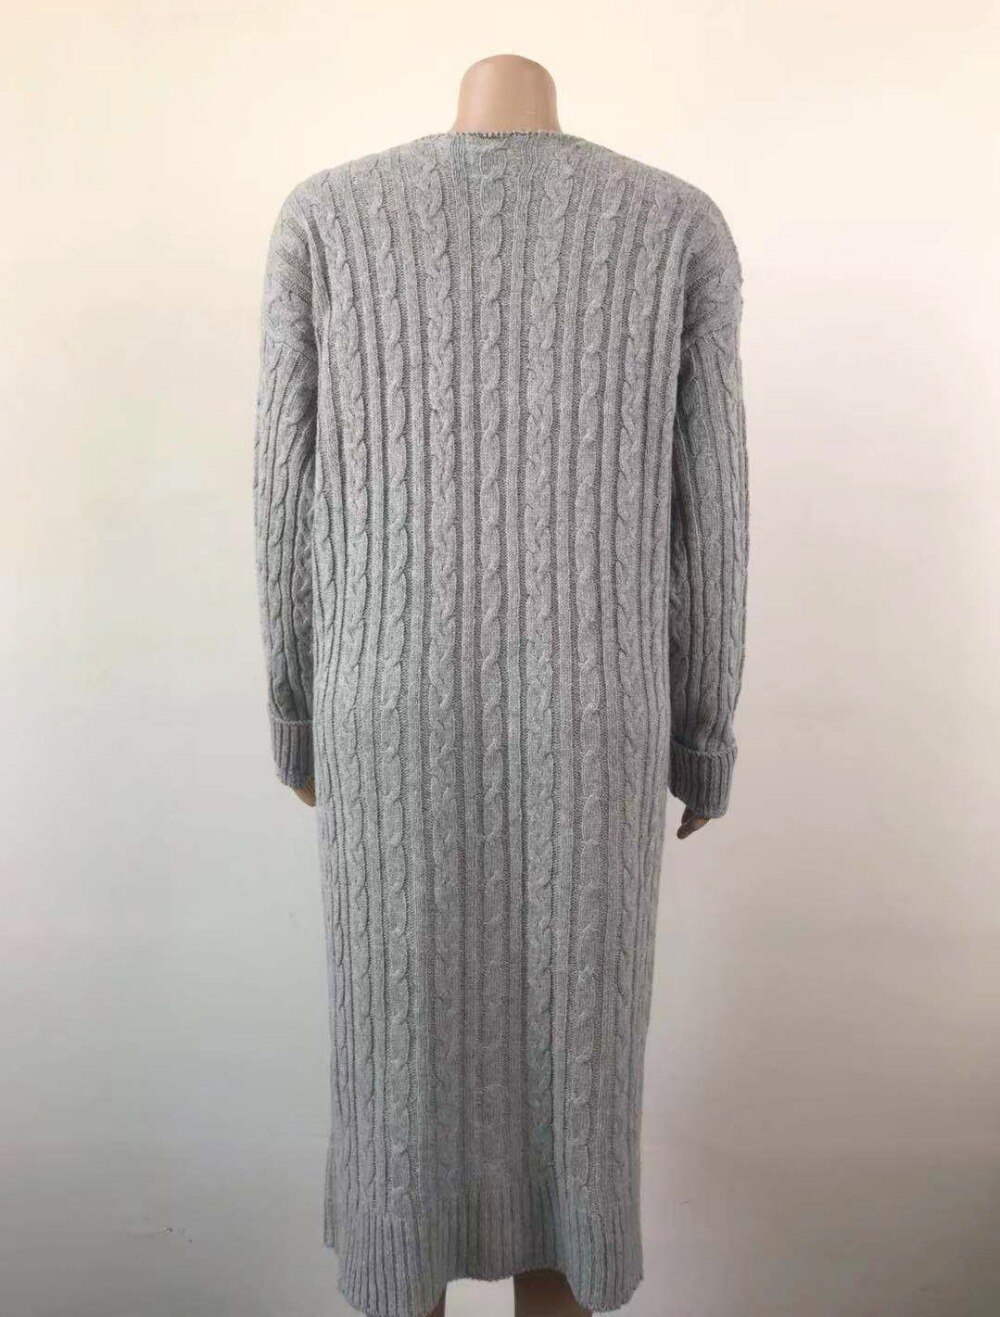 LOGAMI 2019 nowy kardigan płaszcz kieszenie damskie sweter długi kobiety ciepły sweter gruba dzianina kobiecy sweter zima